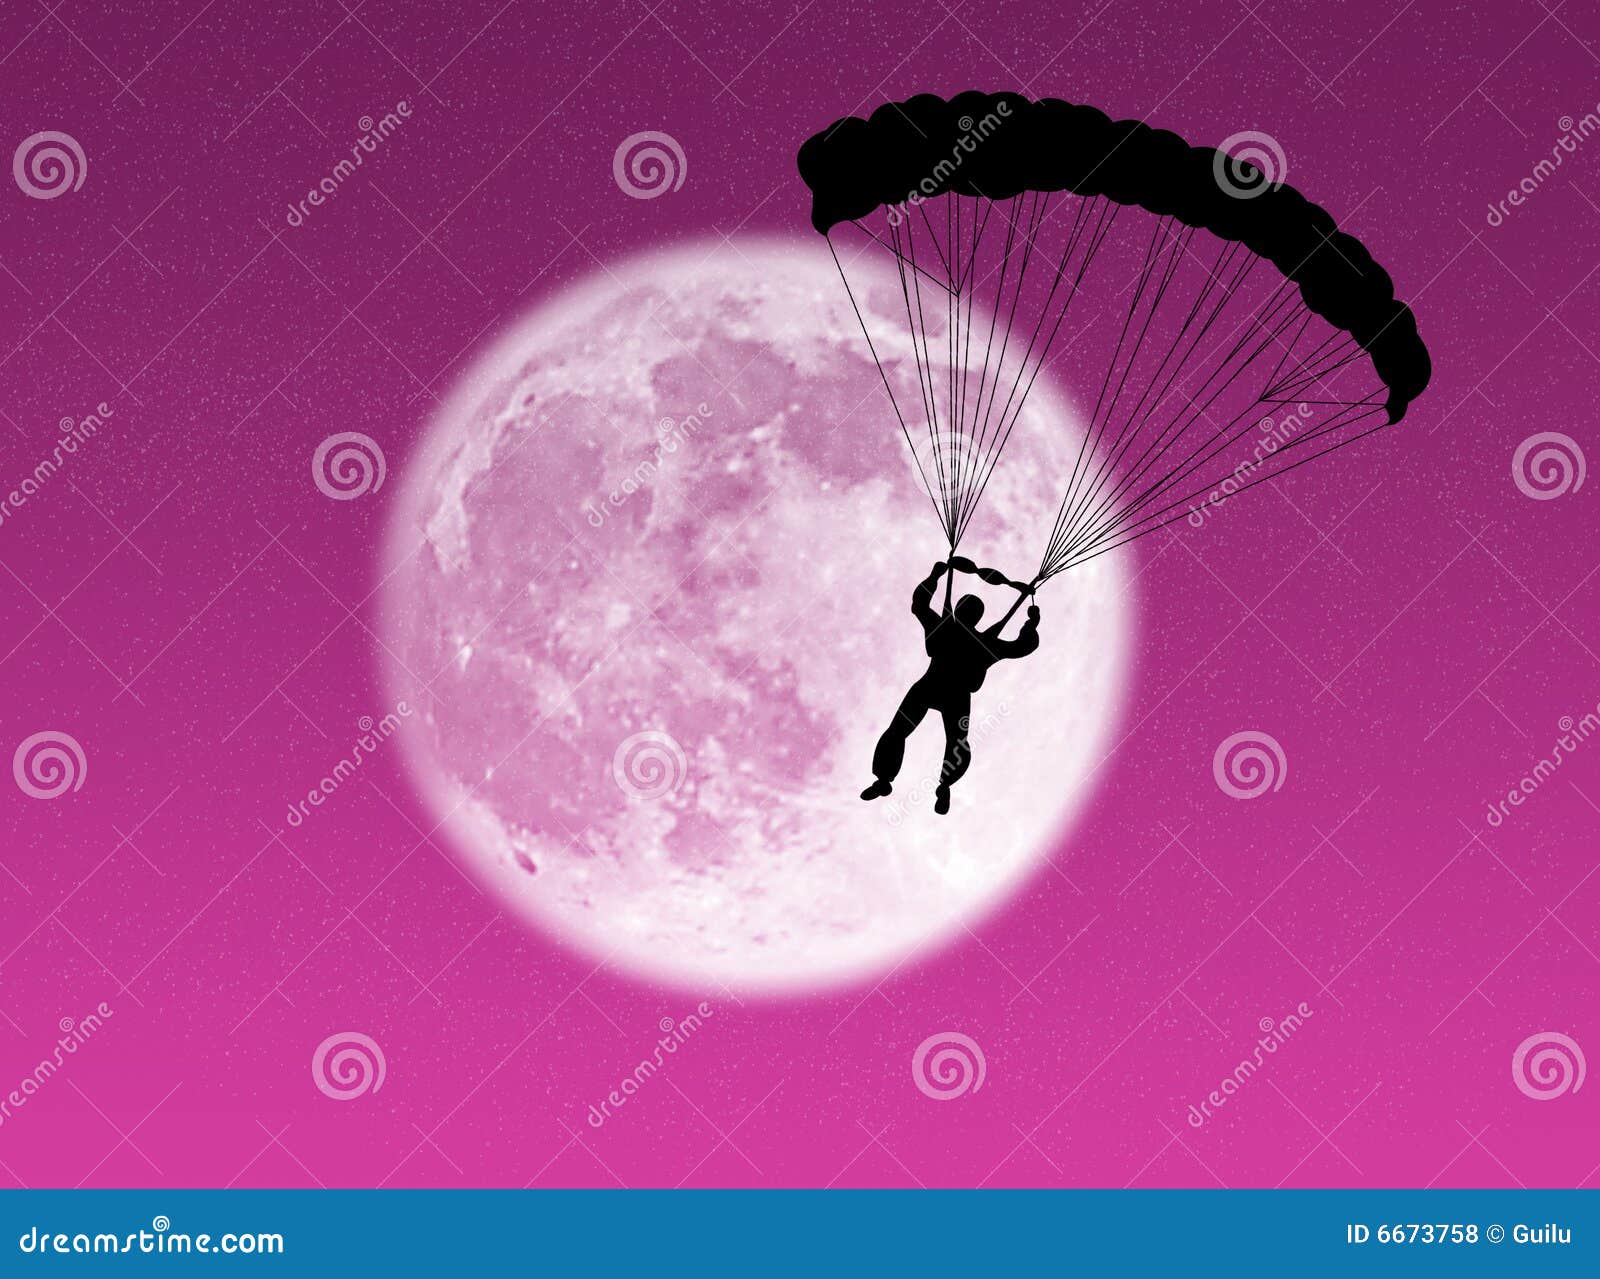 parachutist in the moon